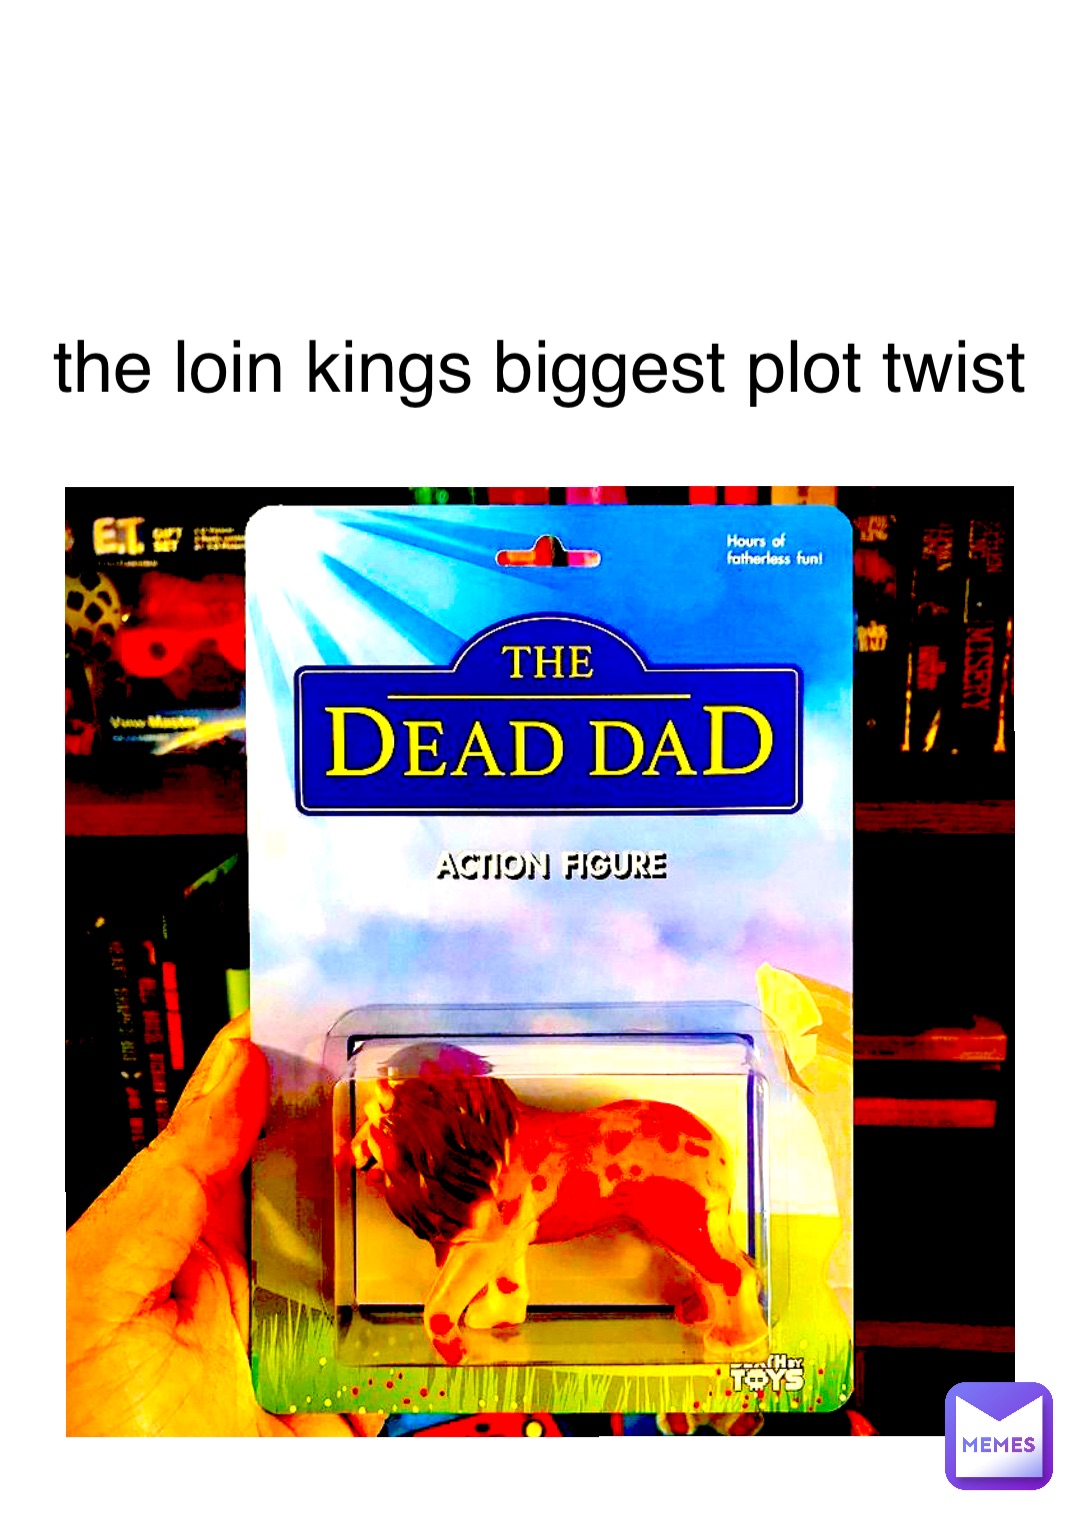 the loin kings biggest plot twist